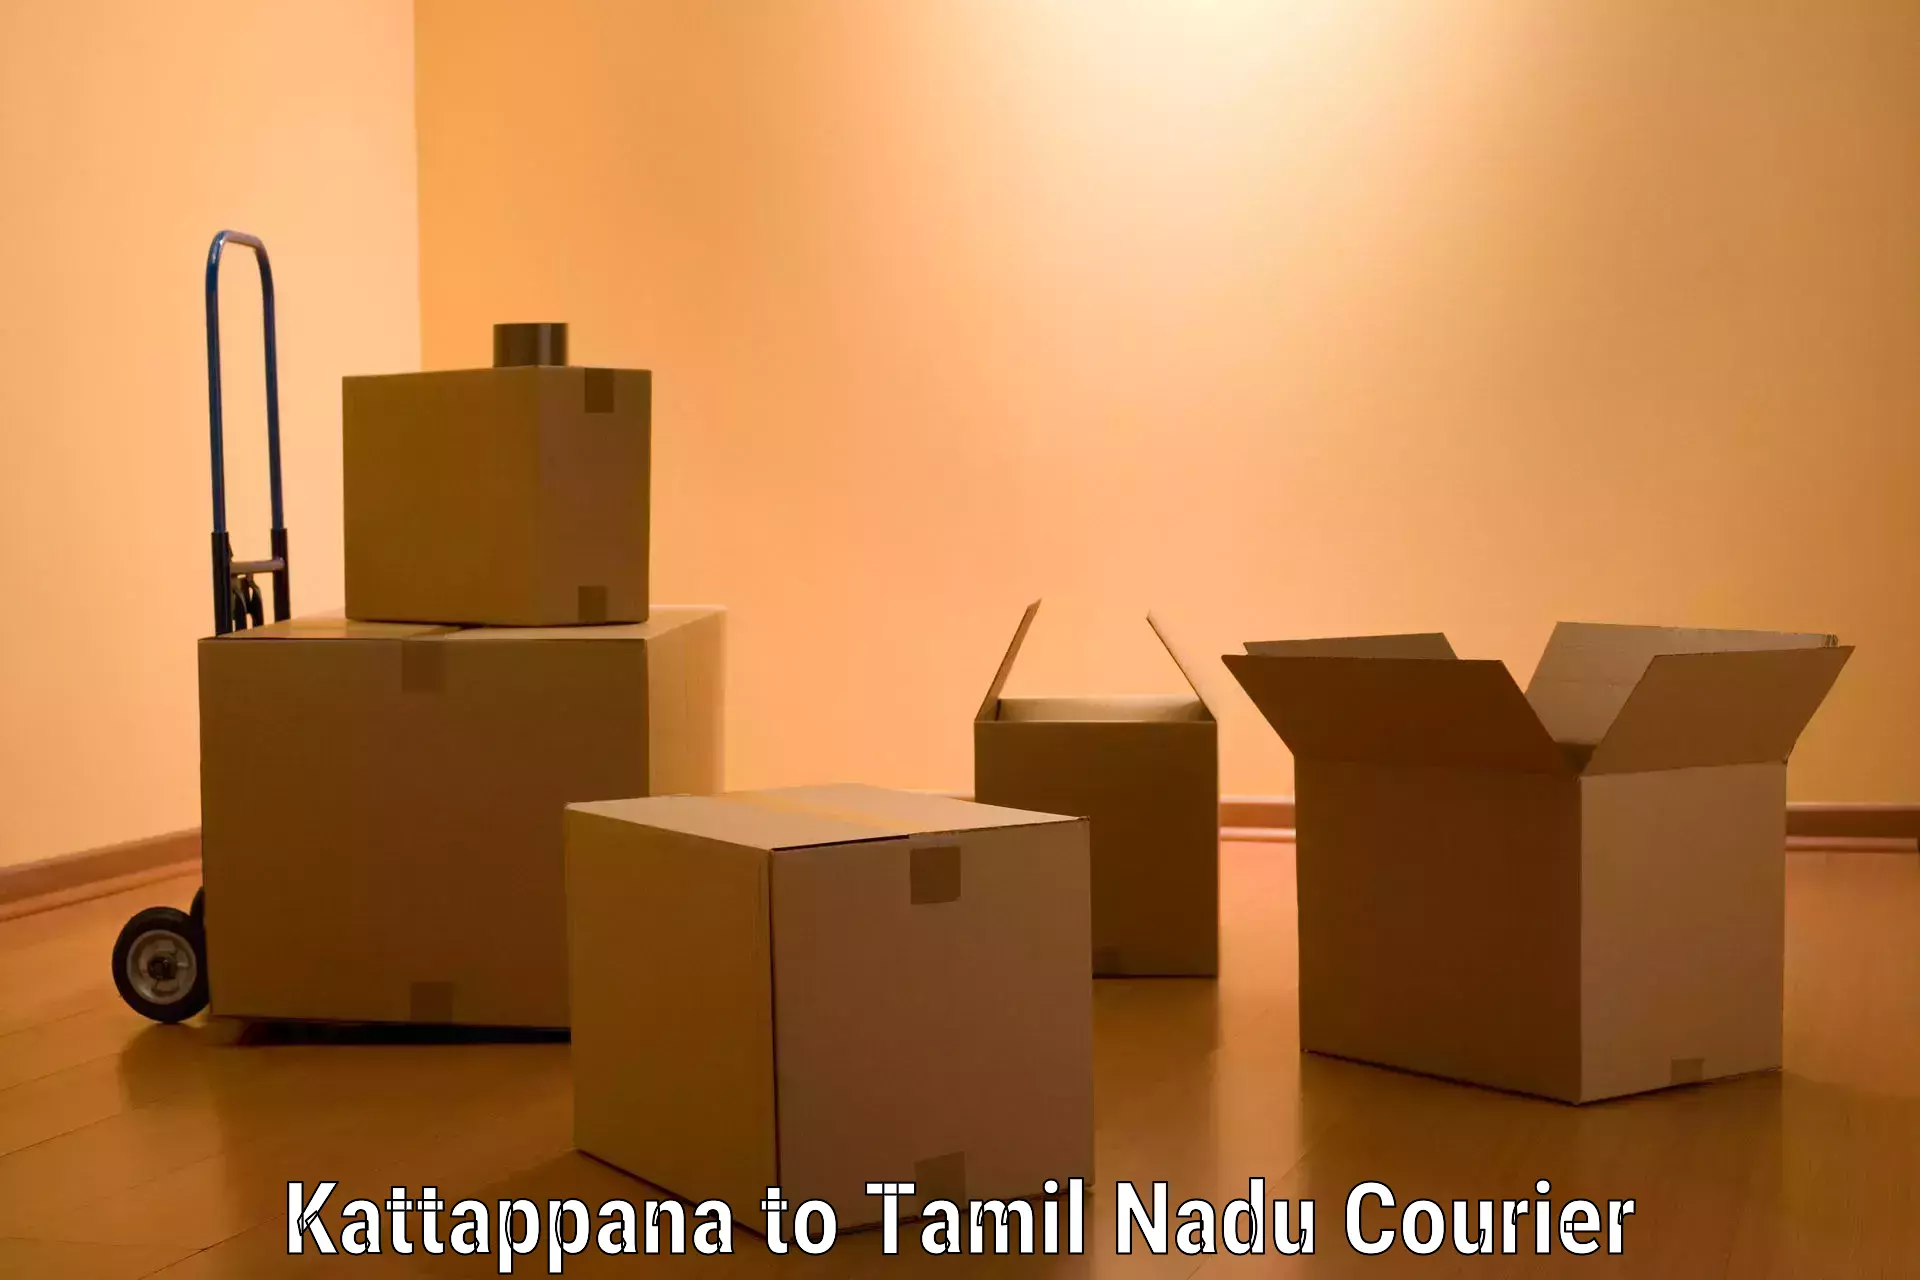 Quality relocation services Kattappana to Tamil Nadu